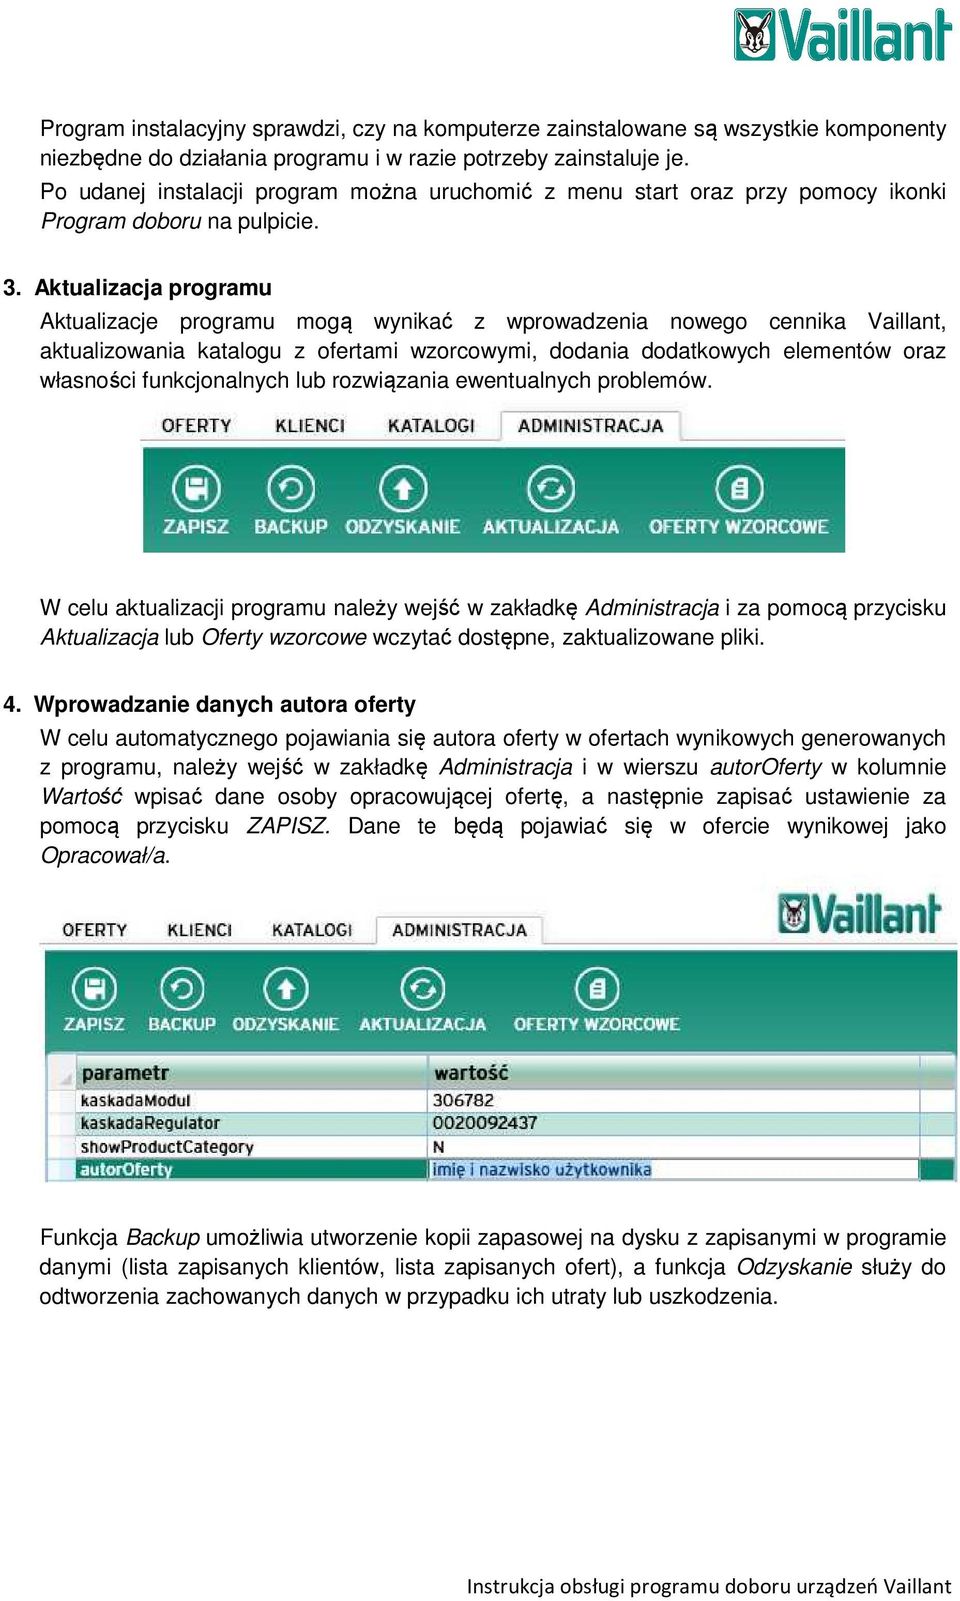 Aktualizacja programu Aktualizacje programu mogą wynikać z wprowadzenia nowego cennika Vaillant, aktualizowania katalogu z ofertami wzorcowymi, dodania dodatkowych elementów oraz własności